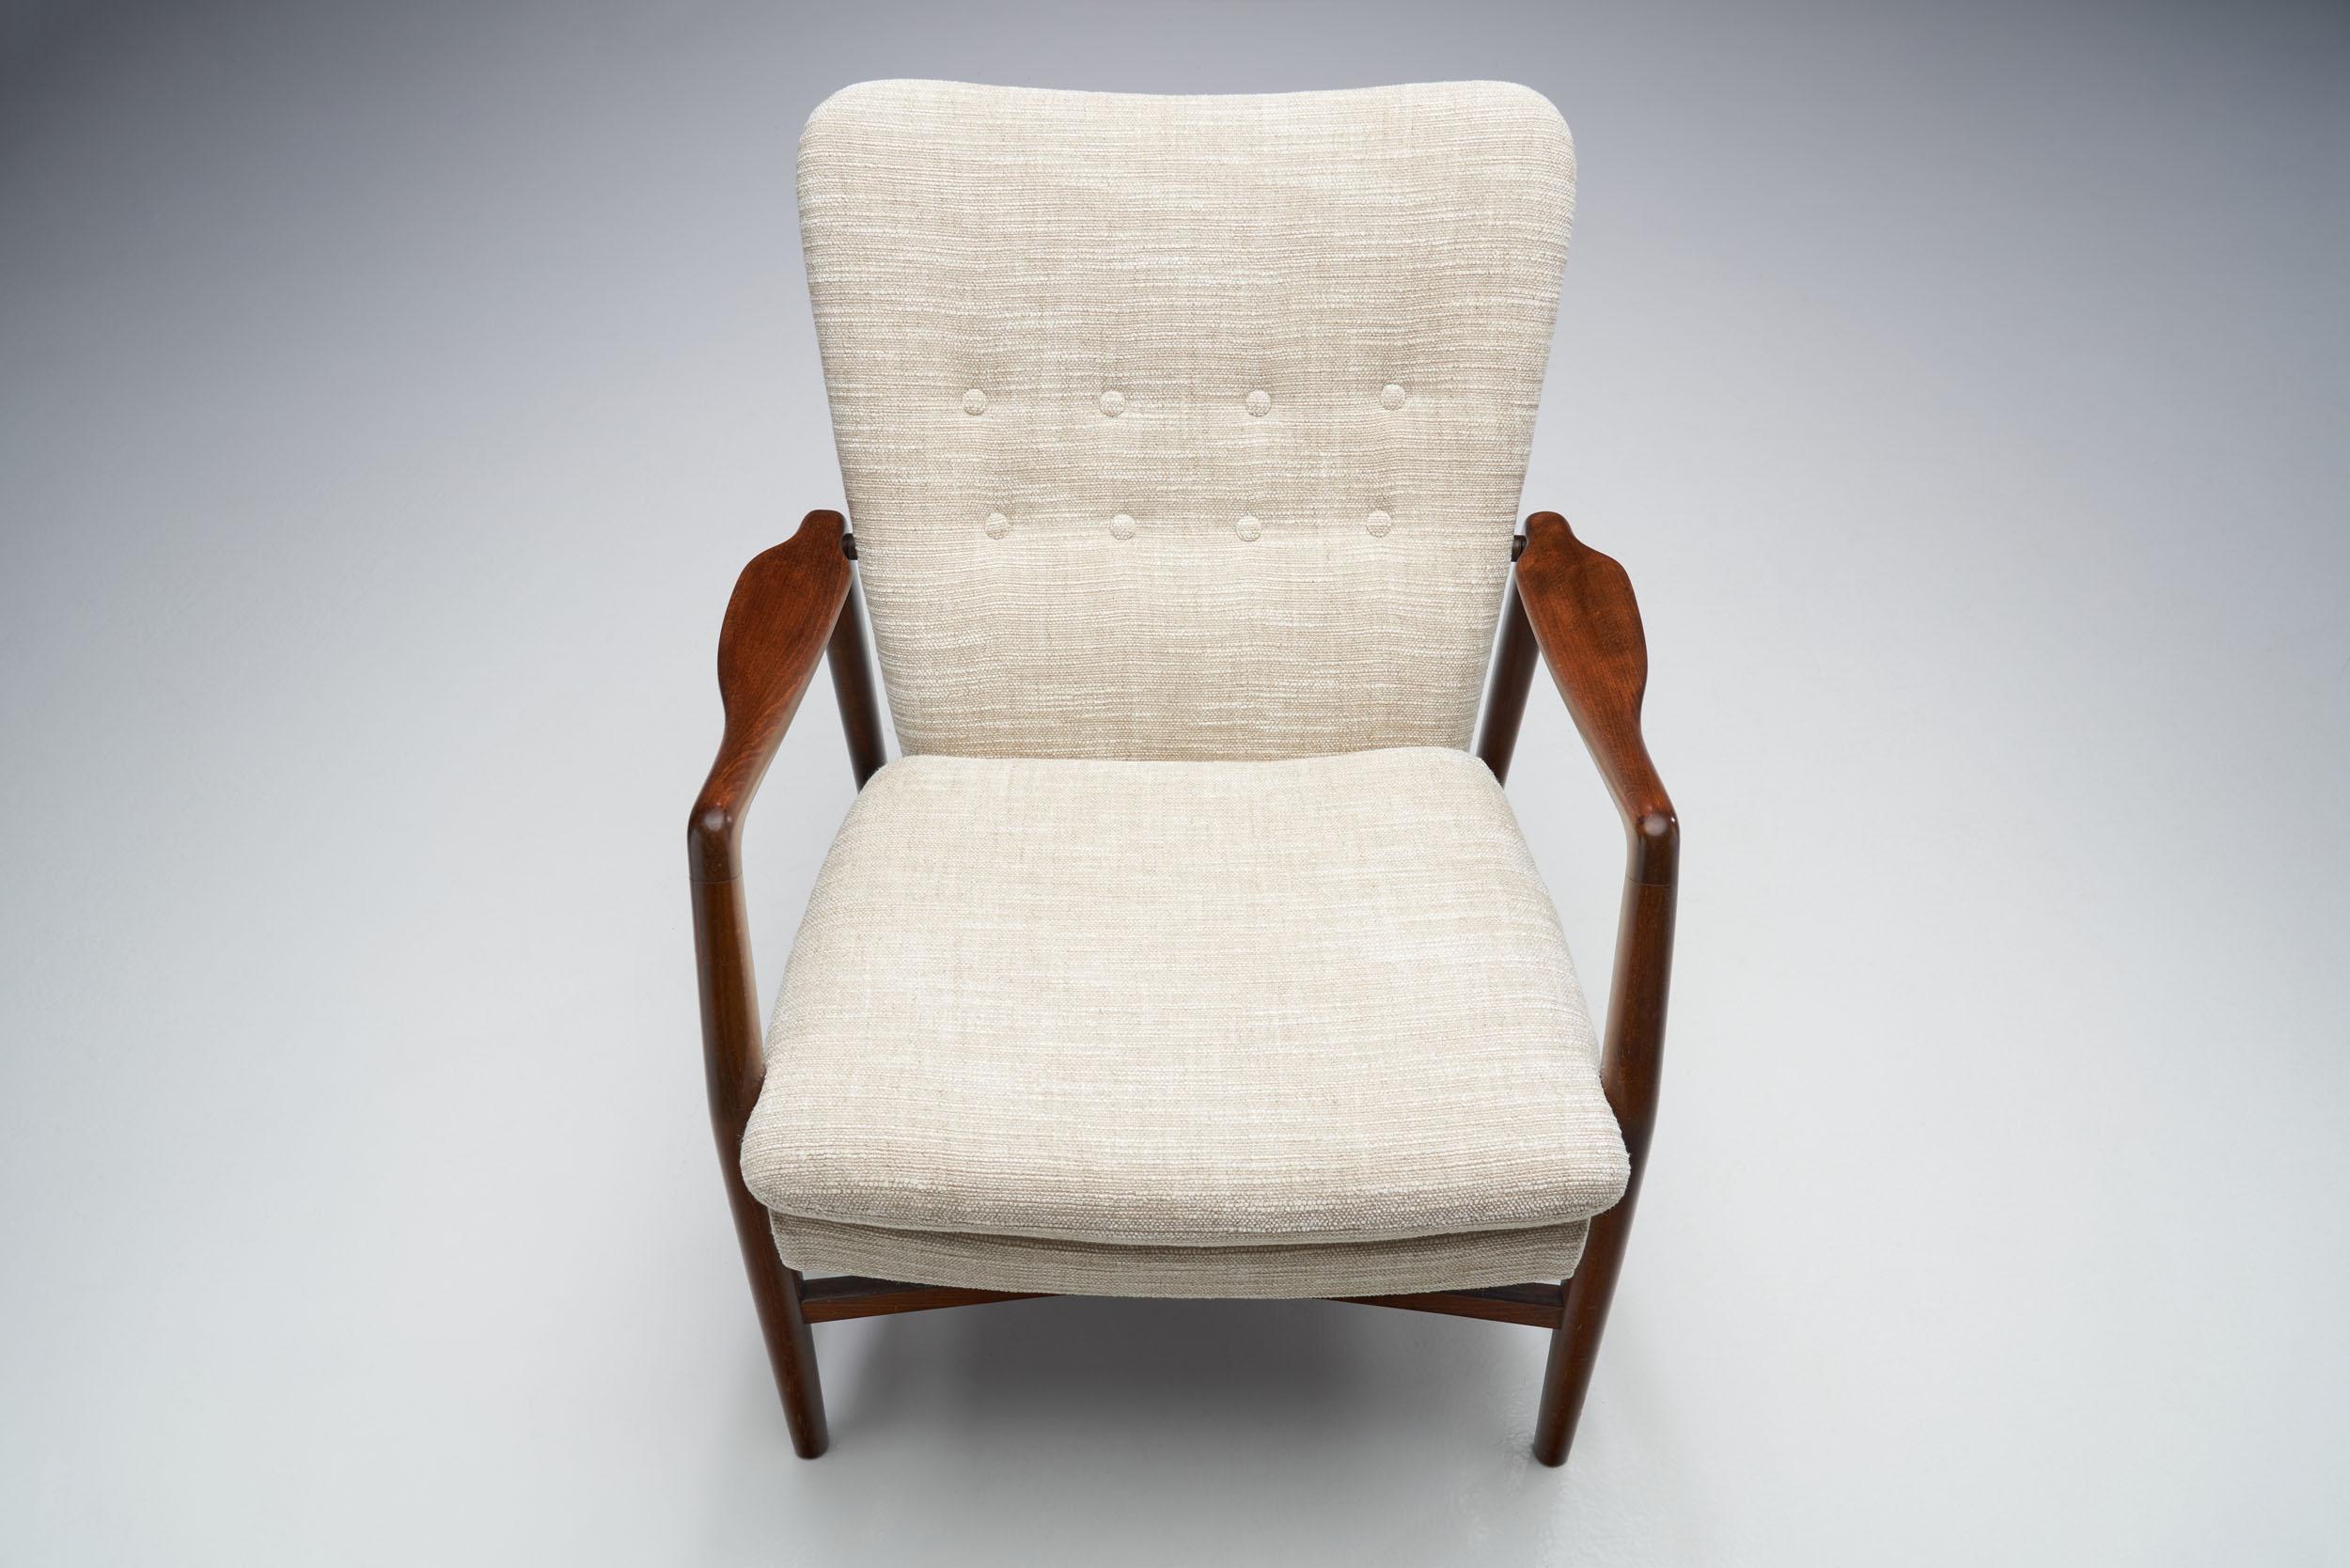 Kurt Olsen “Model 215” Easy Chair for Slagelse Møbelværk, Denmark 1954 For Sale 1